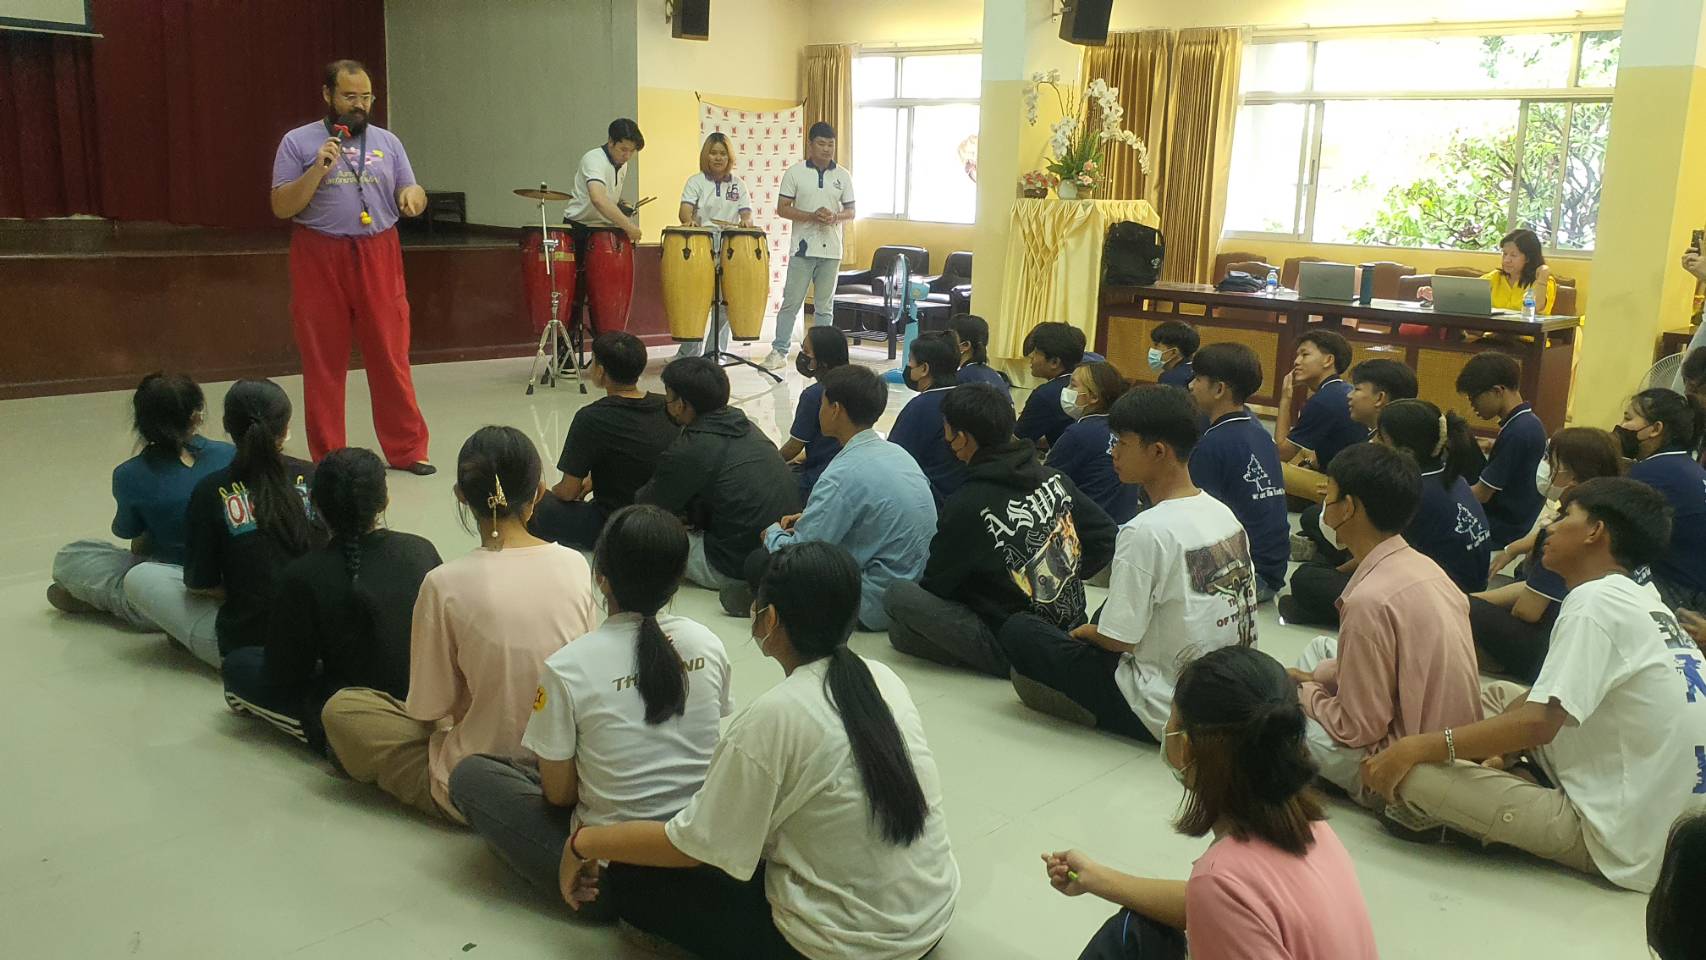 กลุ่ม Shan Youth Power ร่วมกับหอสมุดแห่งชาติรัชมังคลาภิเษก เชียงใหม่ จัดอบรมเชิงปฏิบัติการให้กับเยาวชนลูกหลานแรงงานและเด็กไร้สัญชาติ จำนวน ๗๐ คน